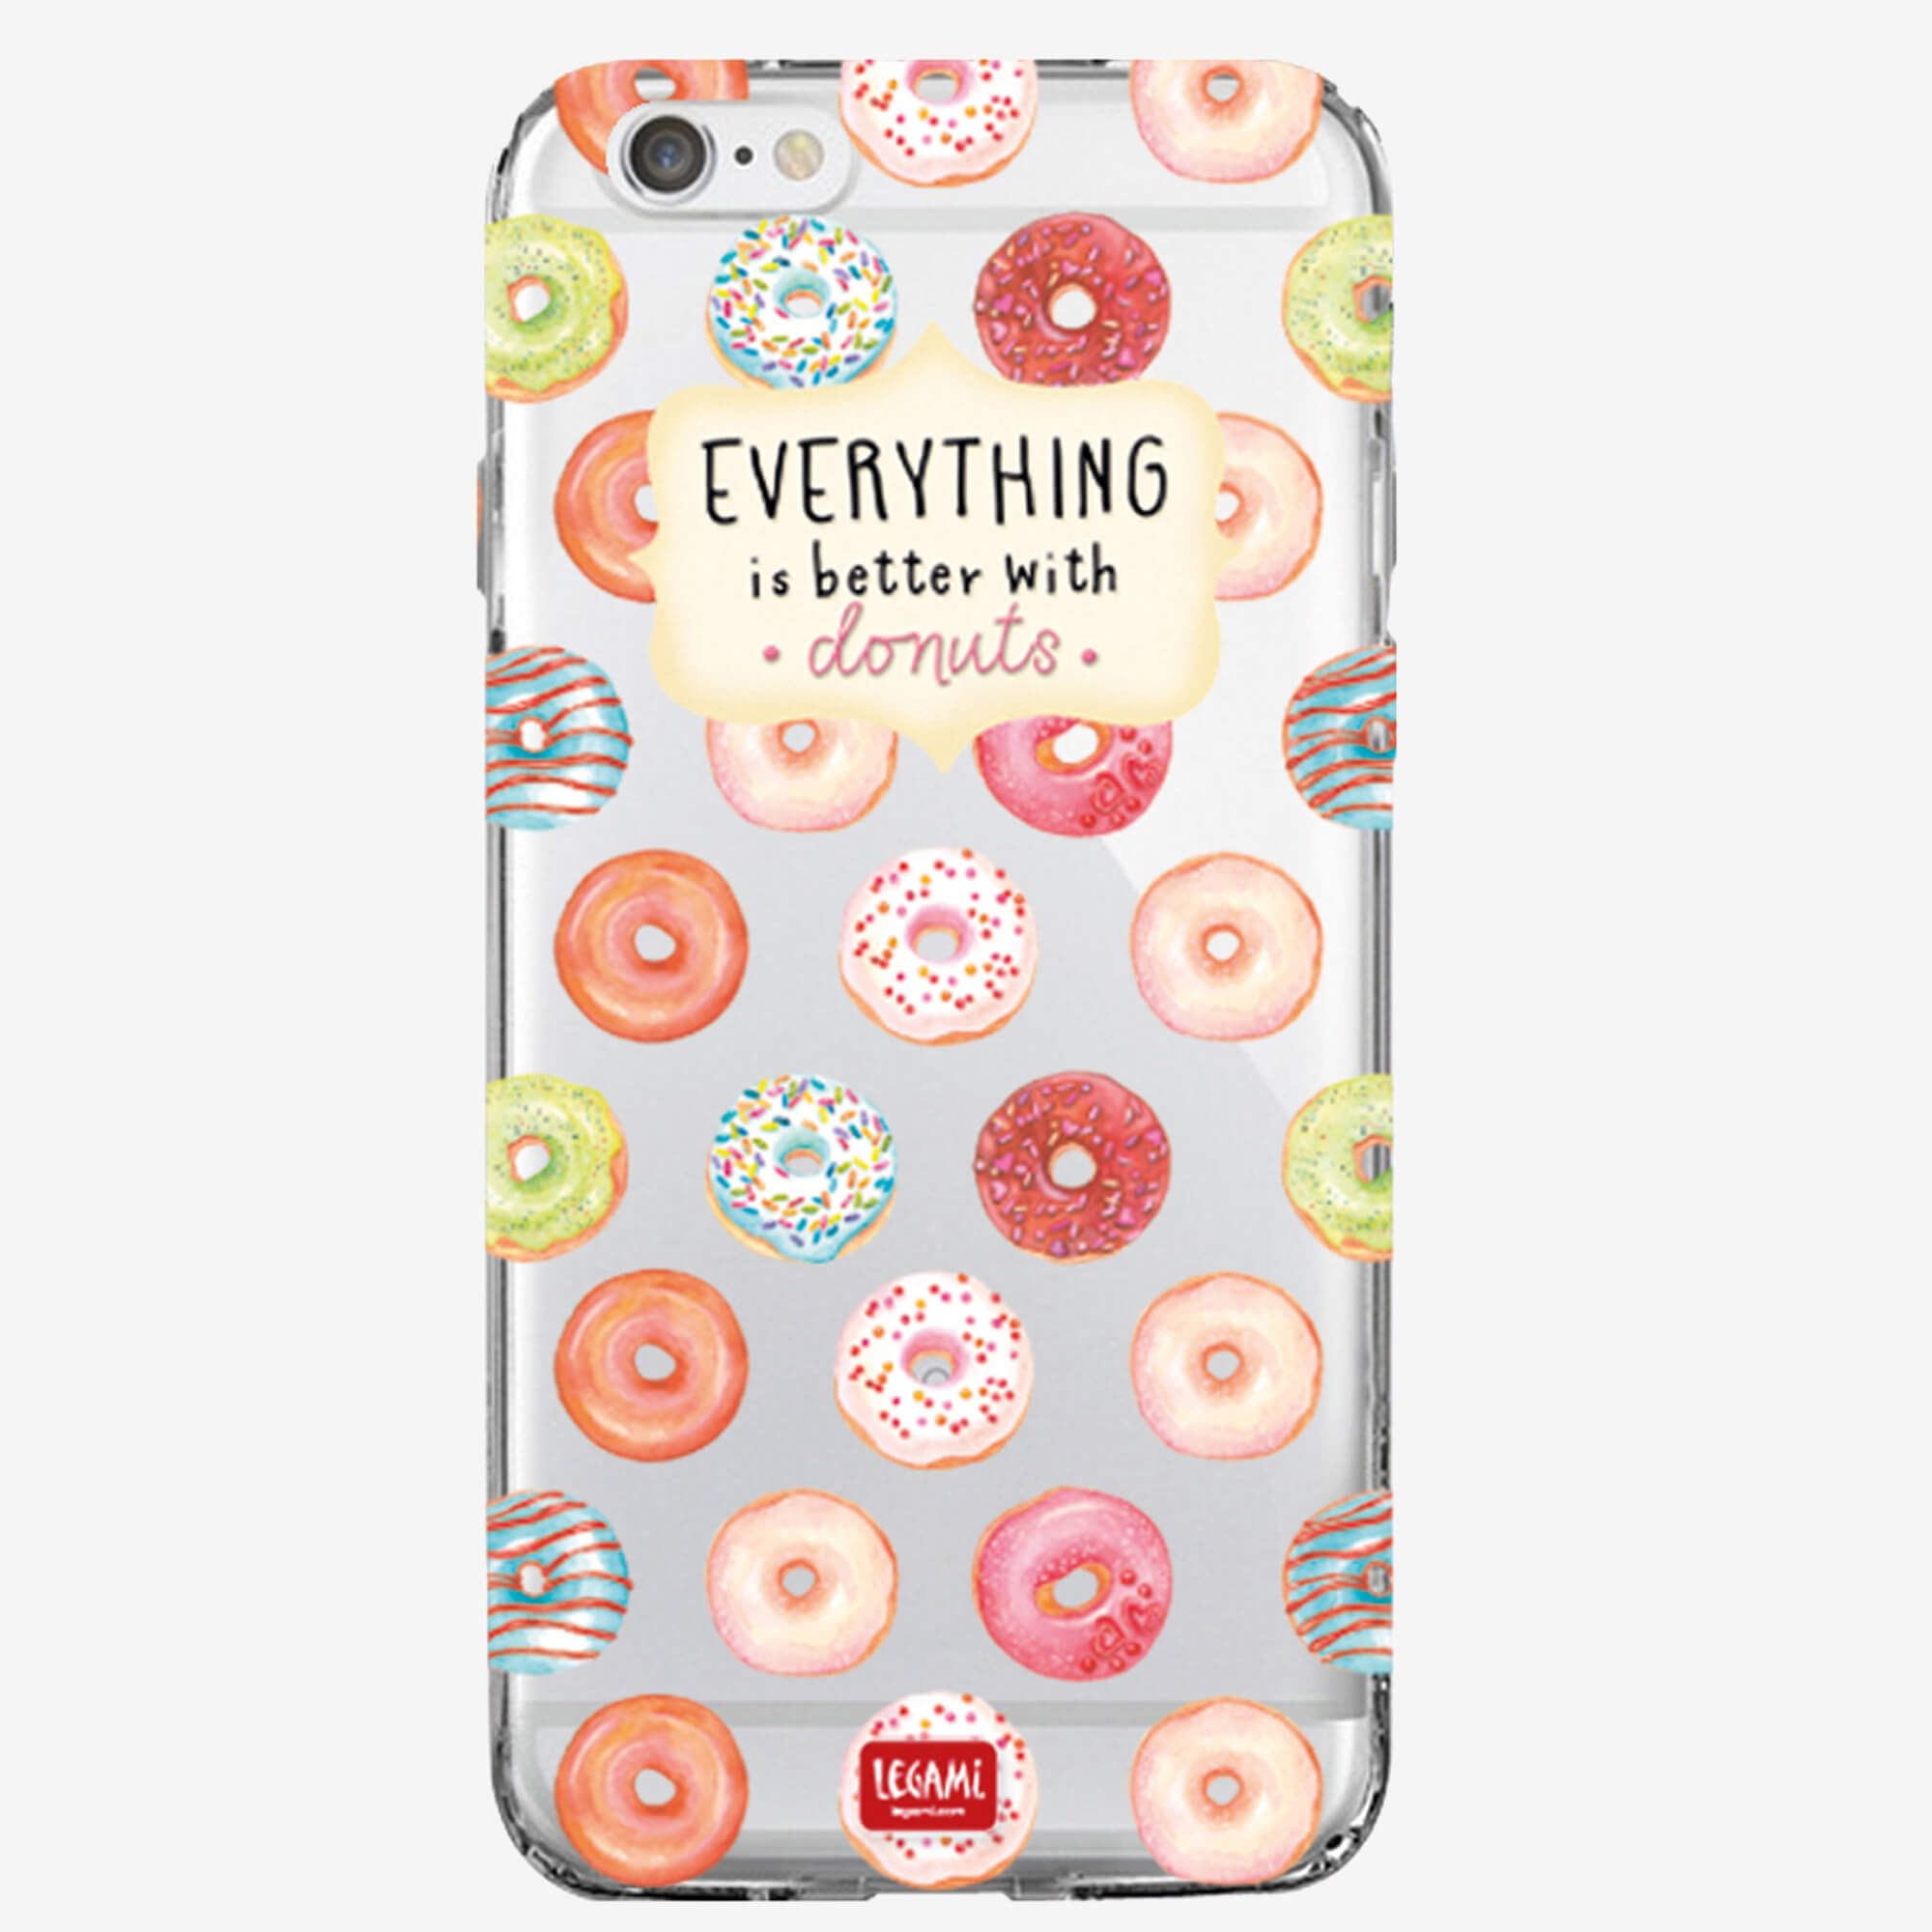 Donuts - Coque iPhone 6/6s transparente Legami 